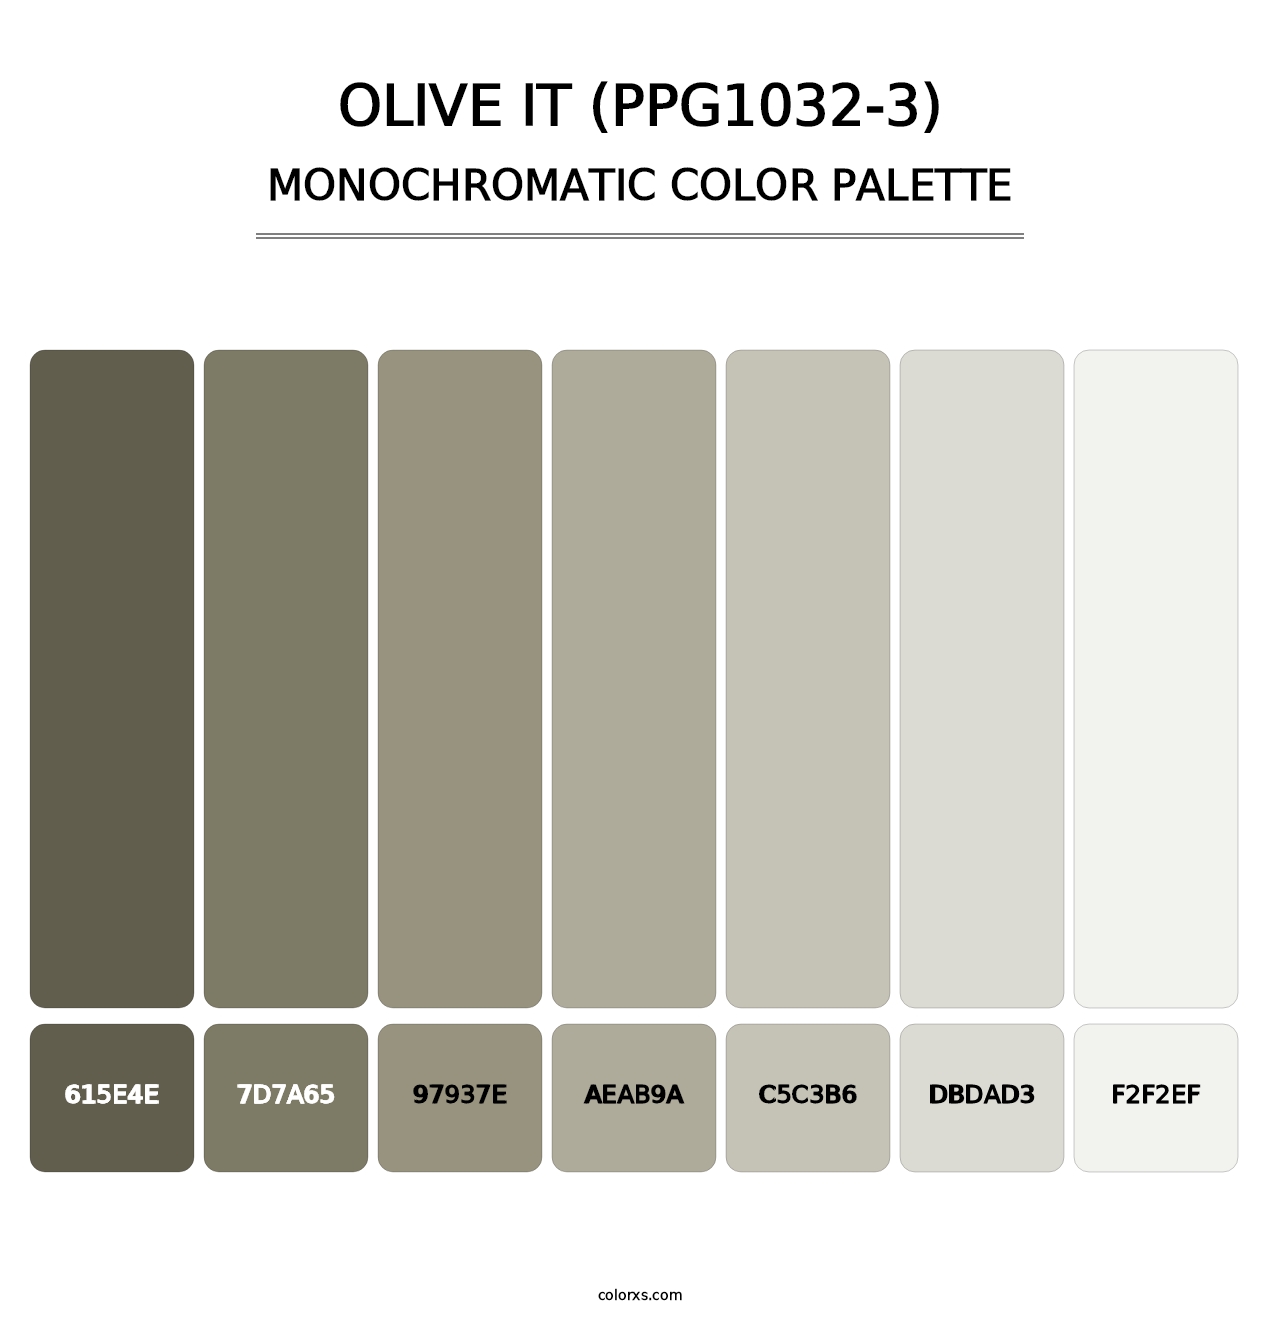 Olive It (PPG1032-3) - Monochromatic Color Palette